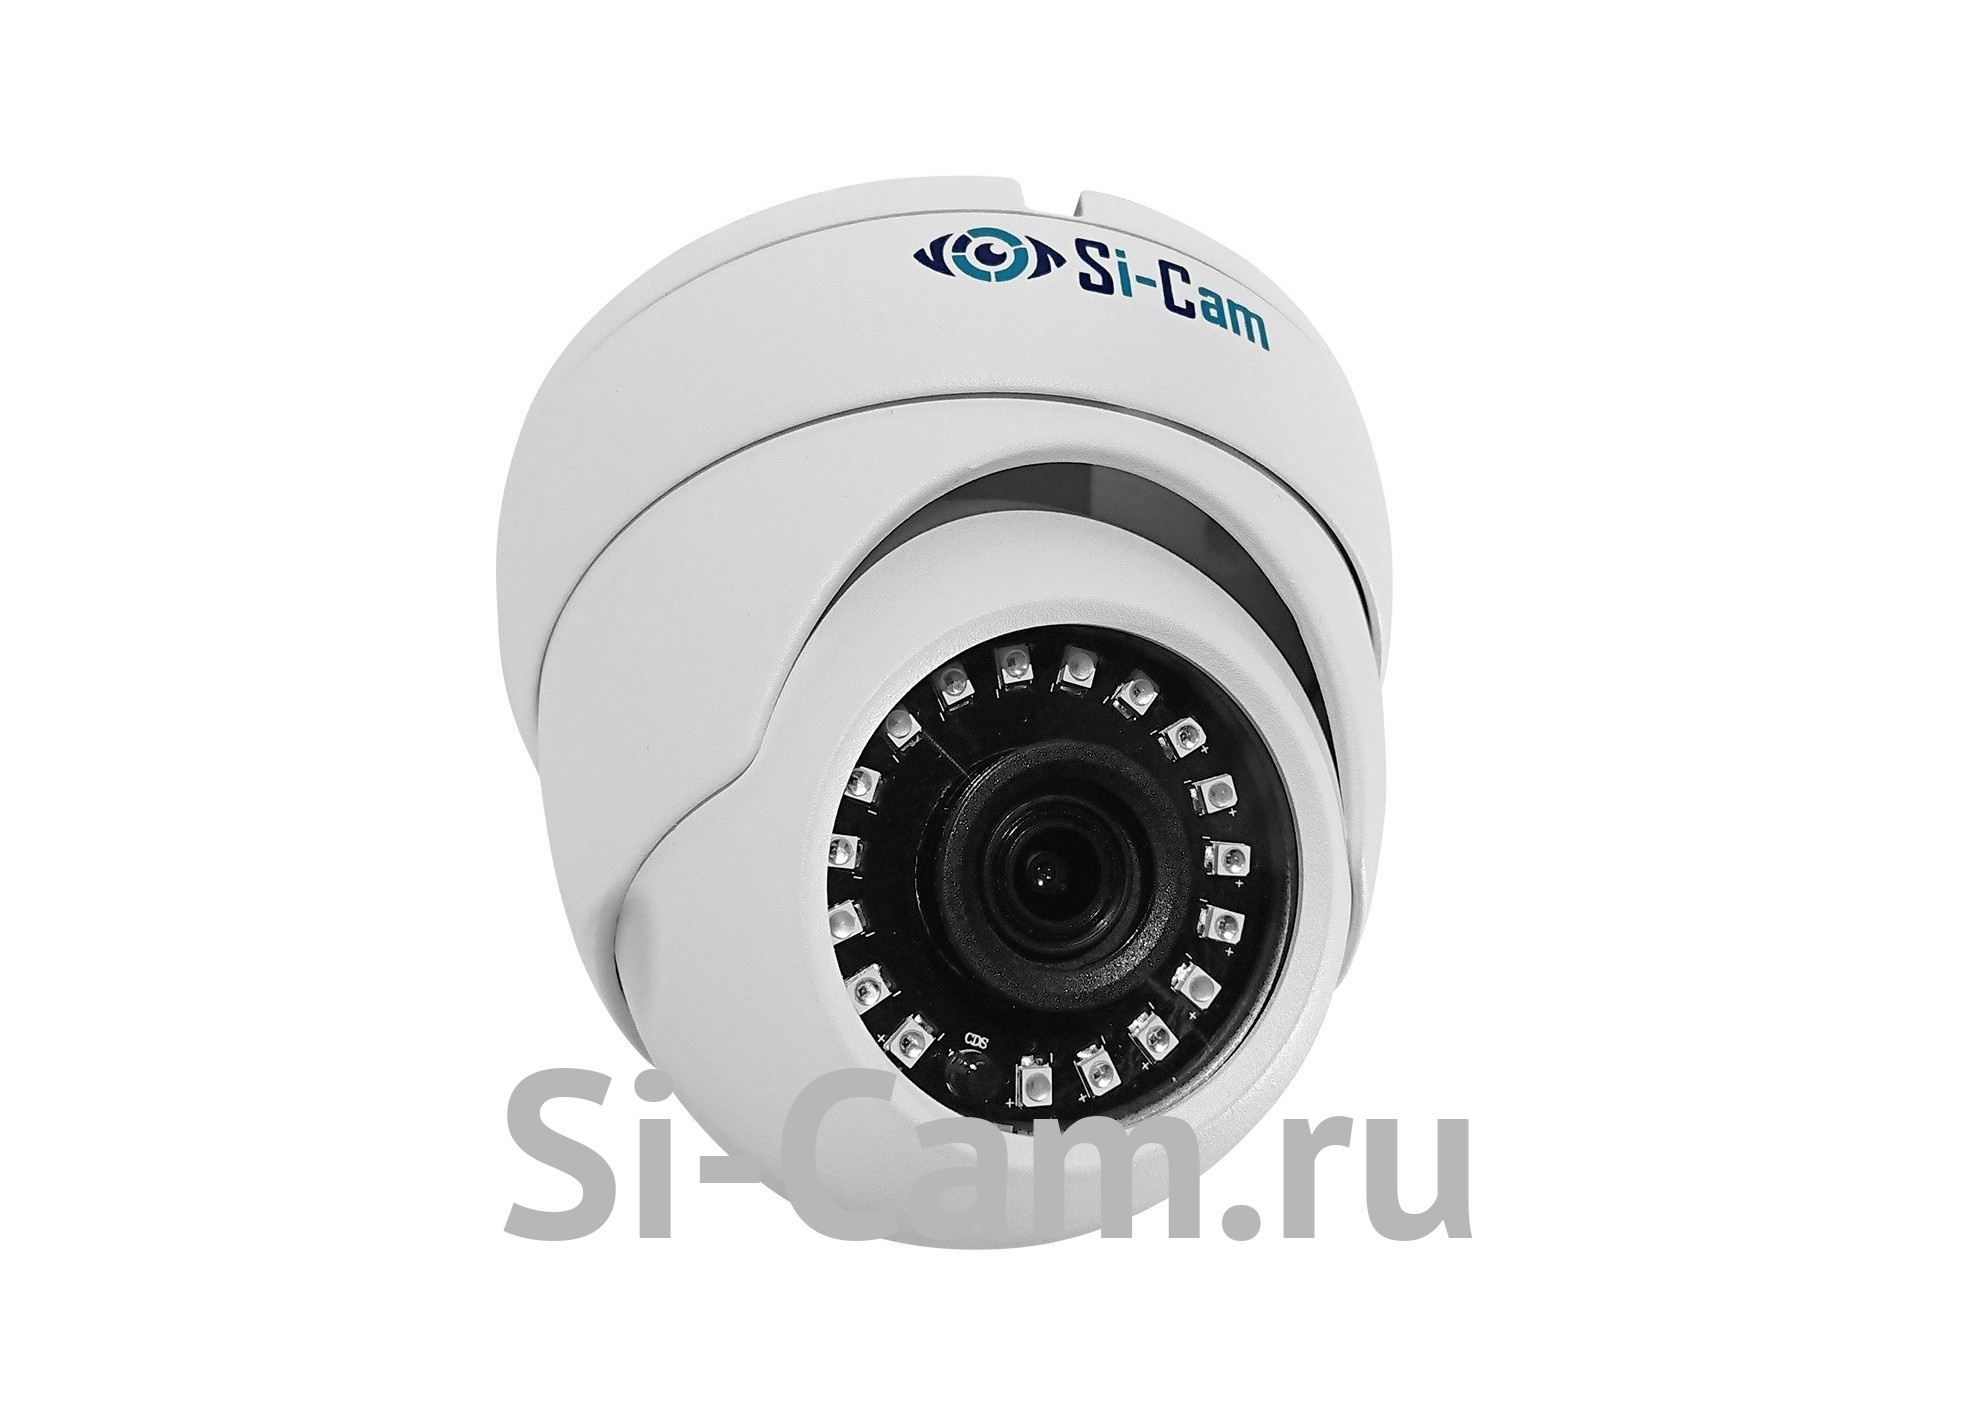 Si-Cam SC-DS402F IR Купольная уличная антивандальная IP видеокамера